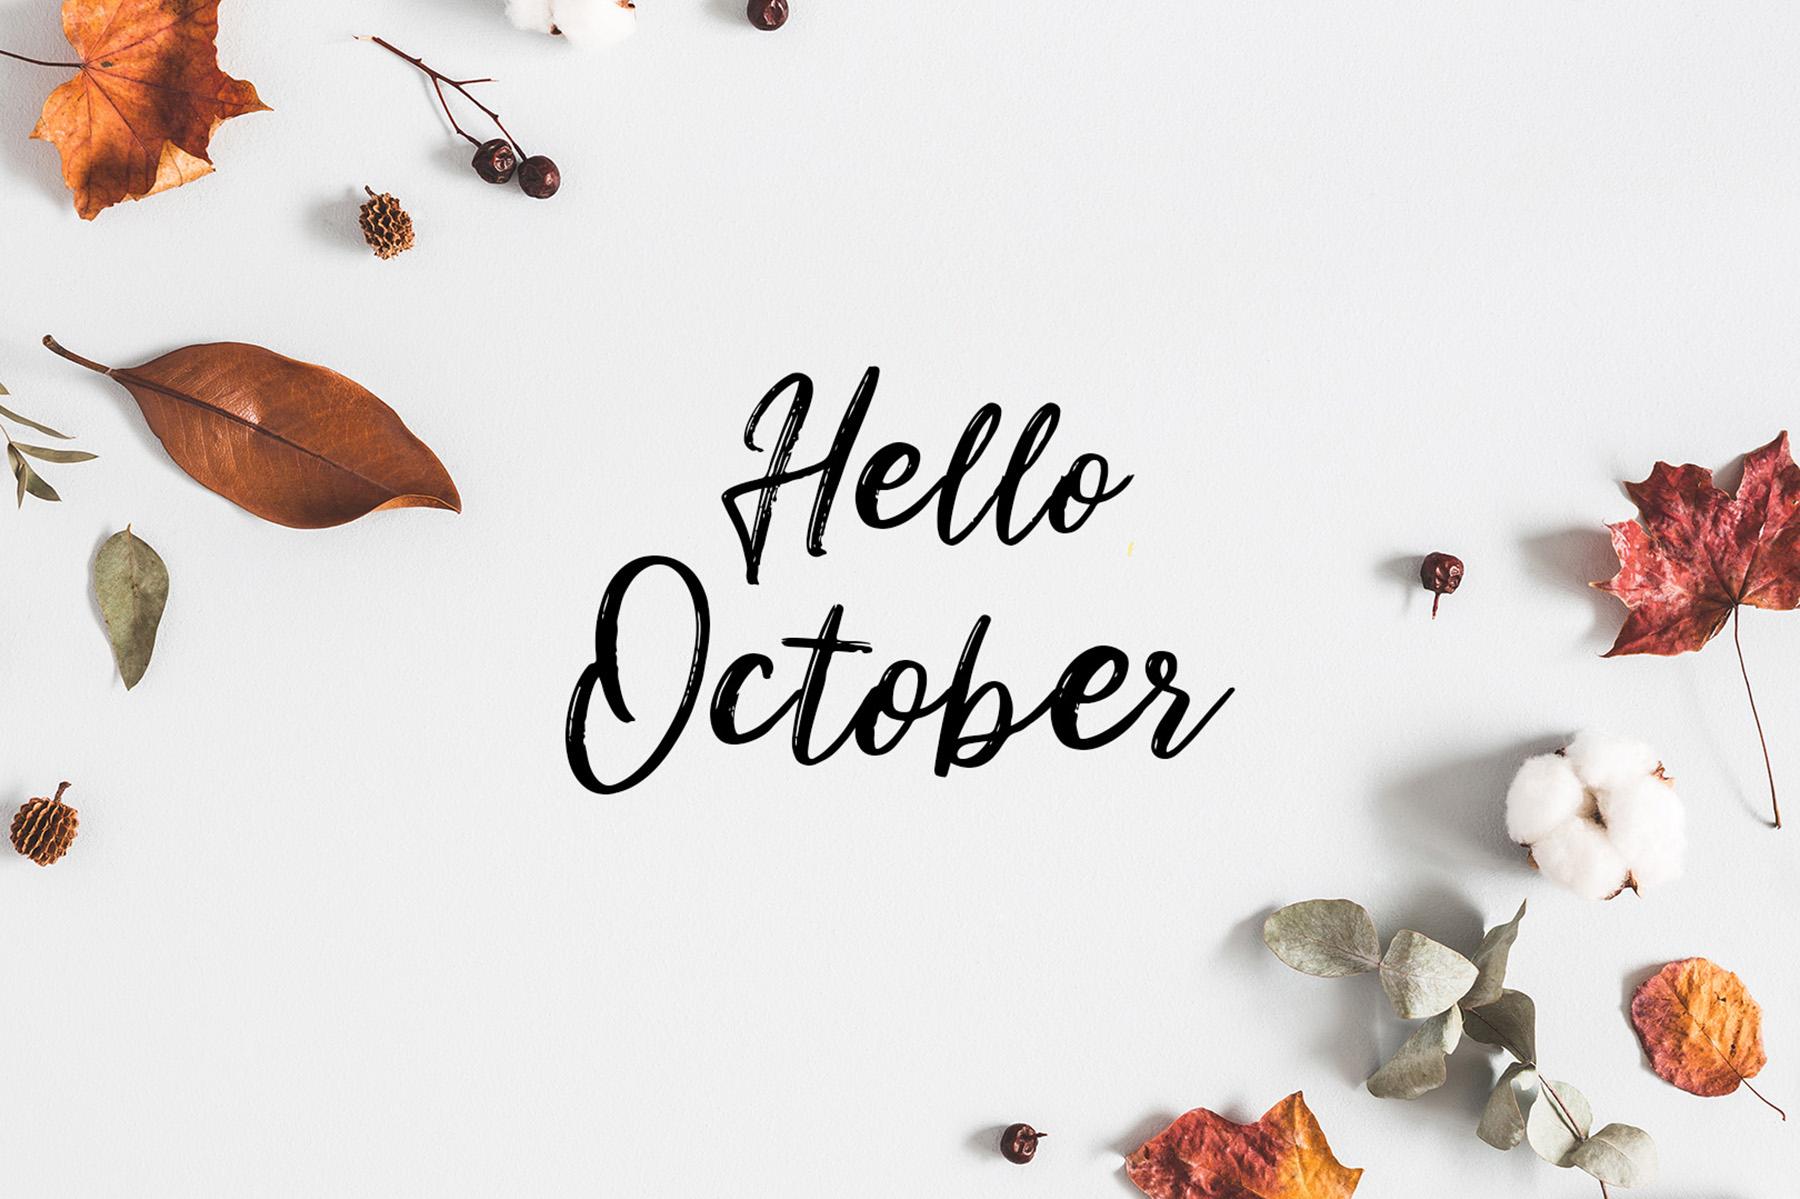 Hello October free desktop wallpaper download Swisspers